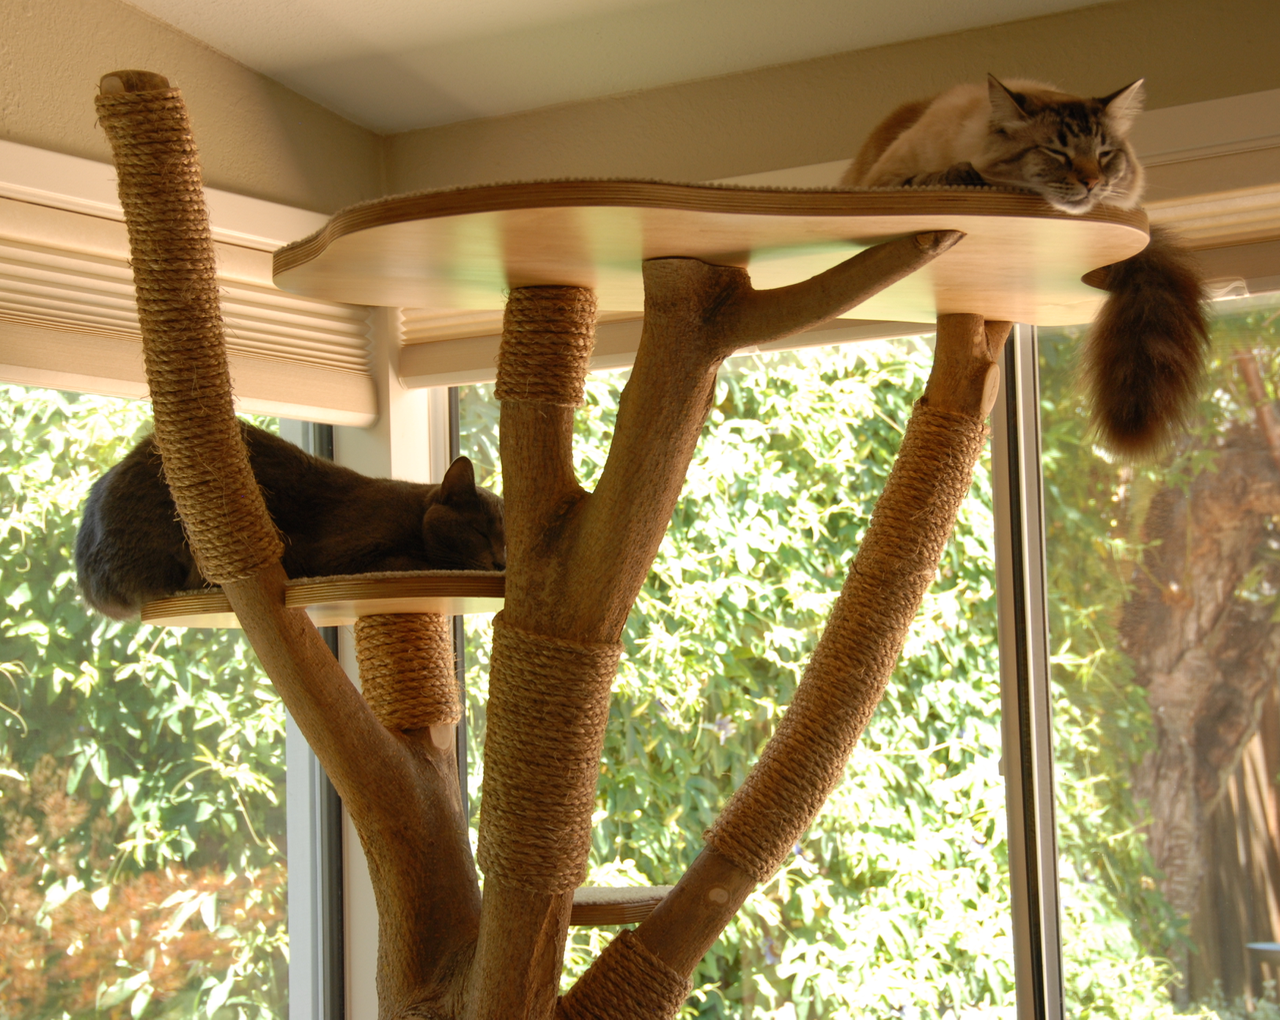 Как сделать домик для кошки (10 способов): своими руками, пошаговая  инструкция, игровой комплекс в домашних условиях, из картона, когтеточка,  примеры на фото